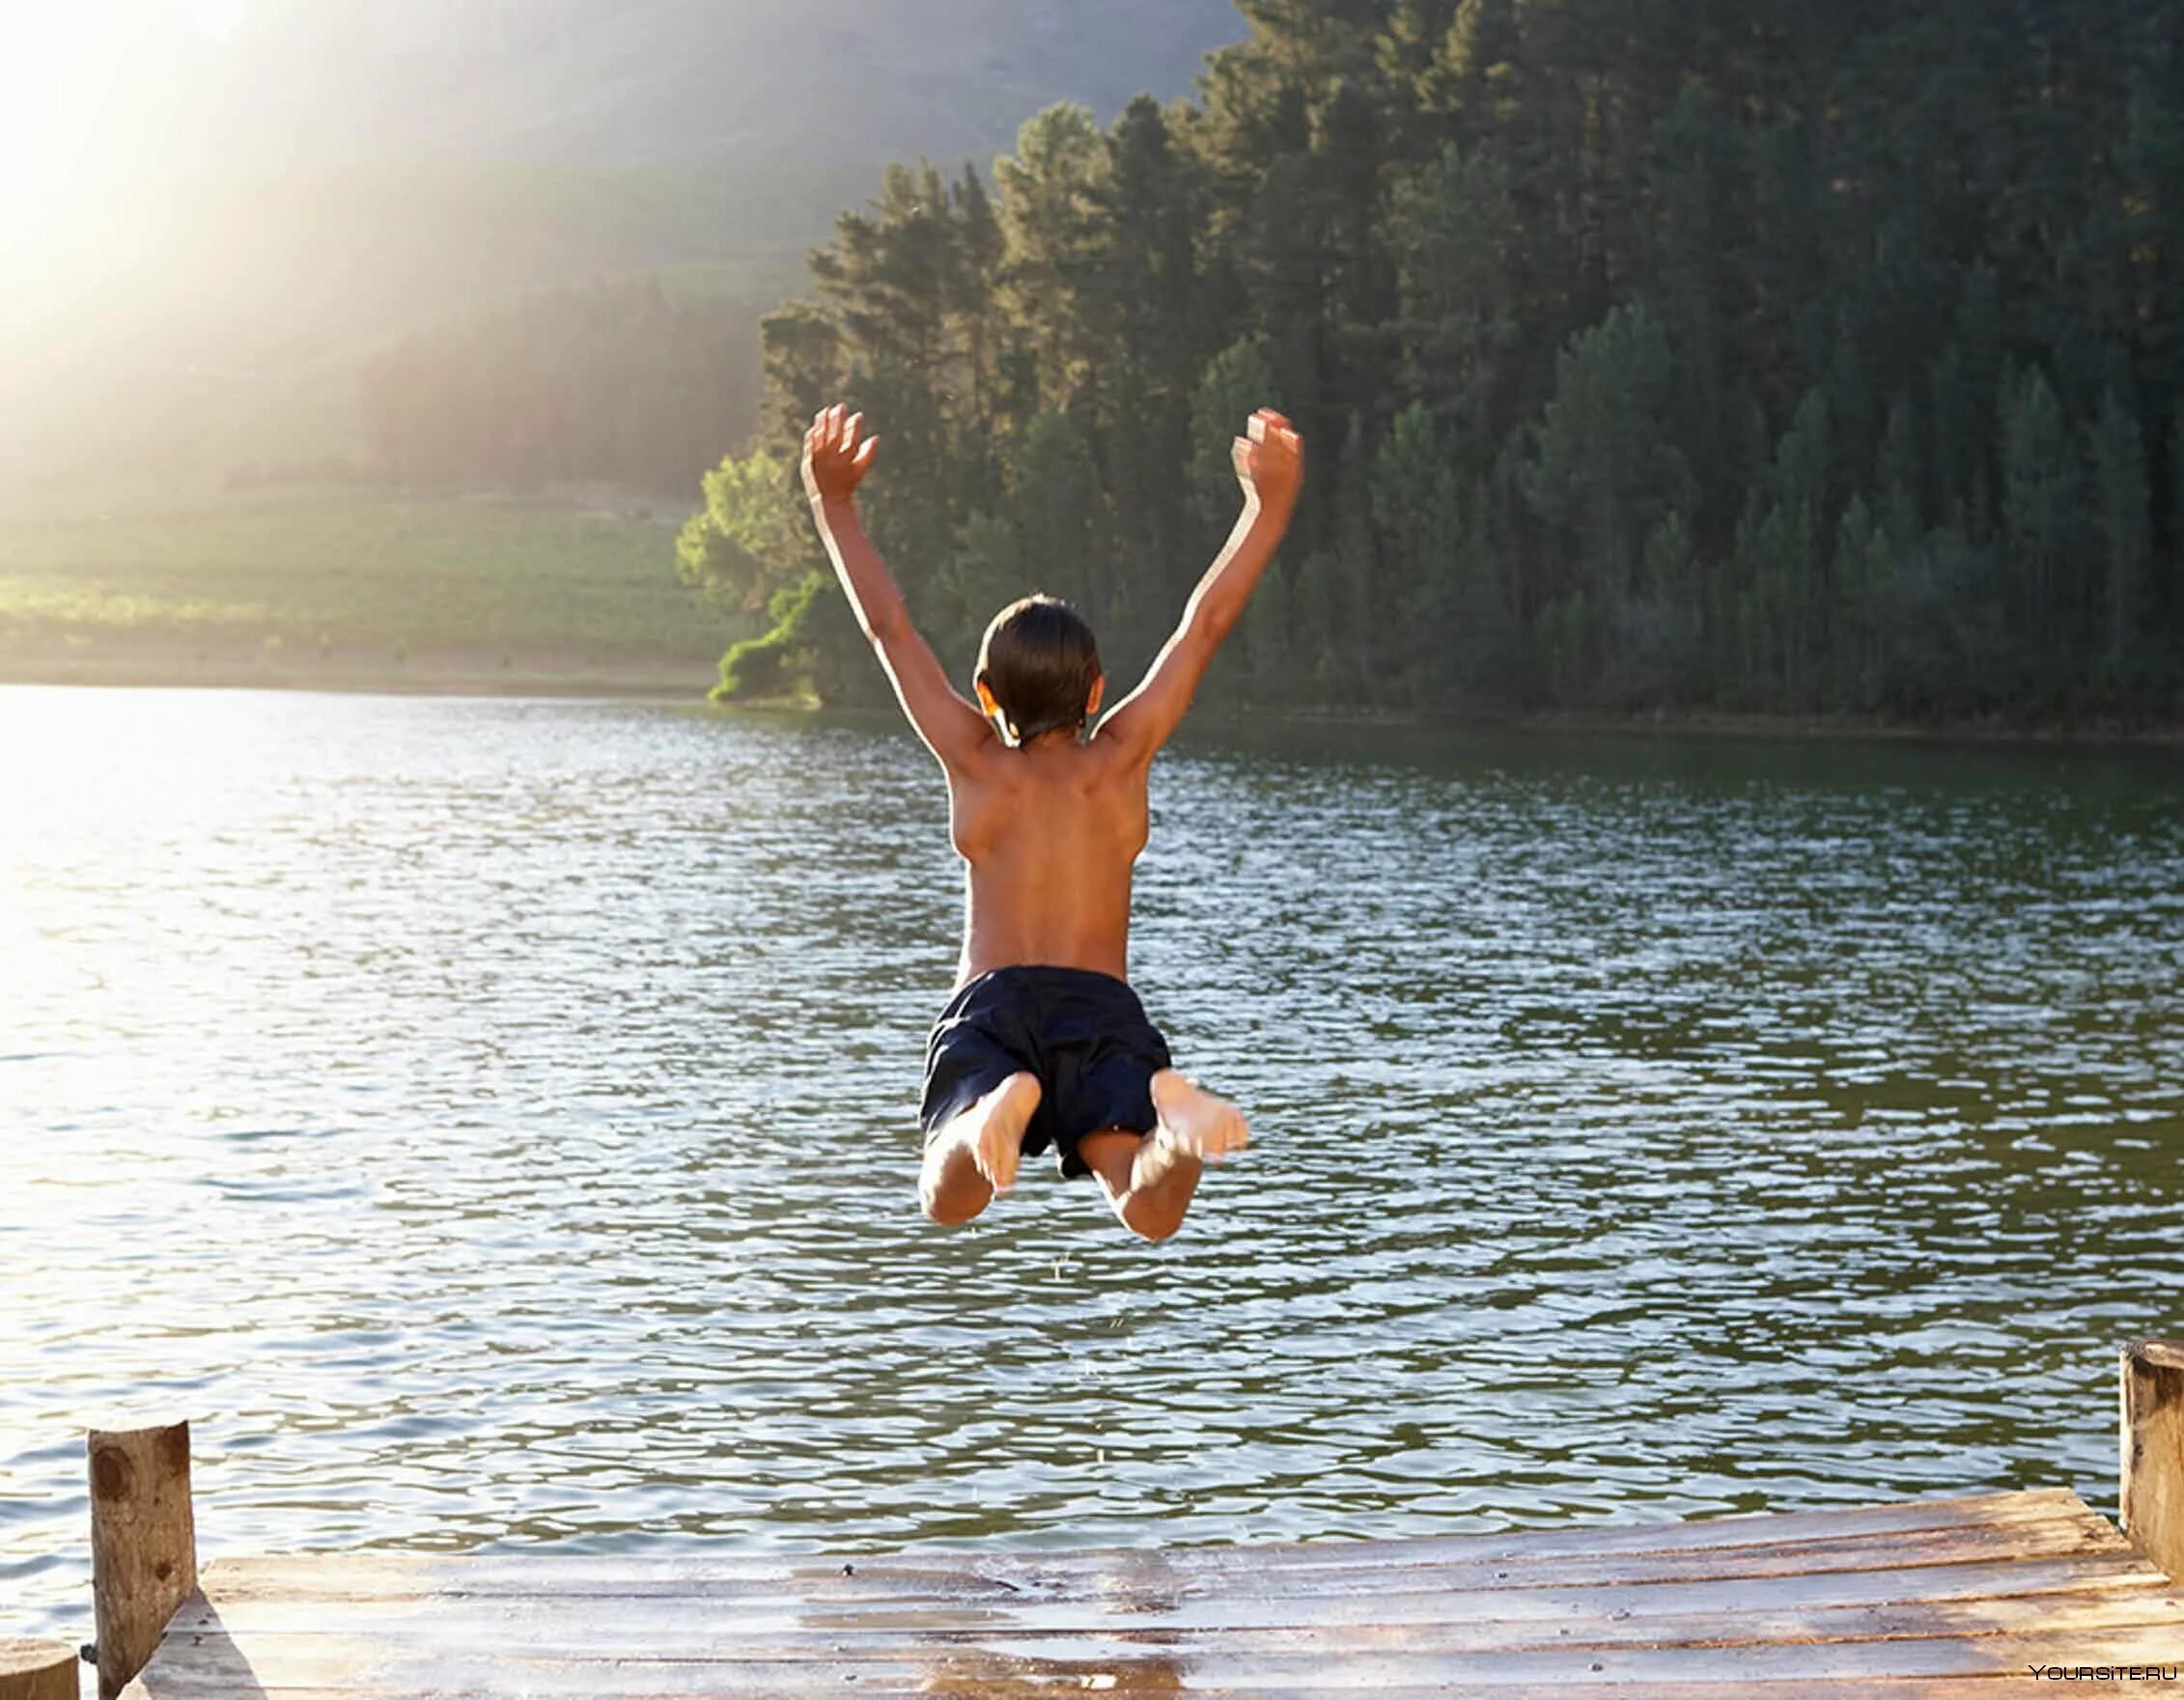 Прыгают в озеро. Дети купаются ВМ озере. Дети прыгают в воду. Купание на речке.